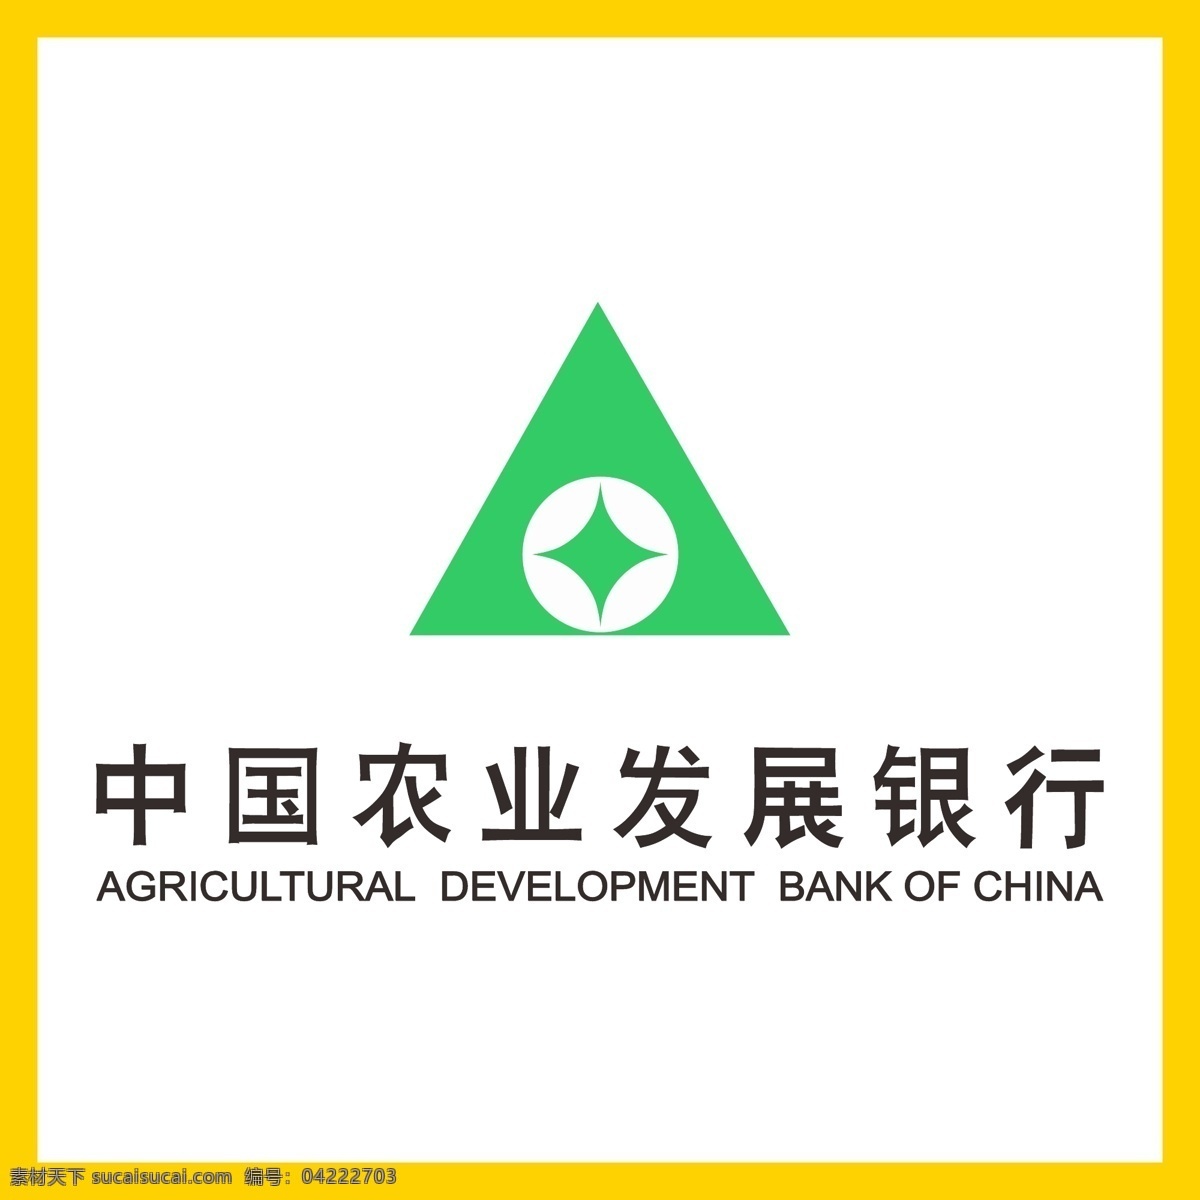 中国农业发展银行 中国农业 发展银行 银行 信用卡 金融 投资理财 理财产品 贷款 国企 事业单位 logo 标志 矢量 vi logo设计